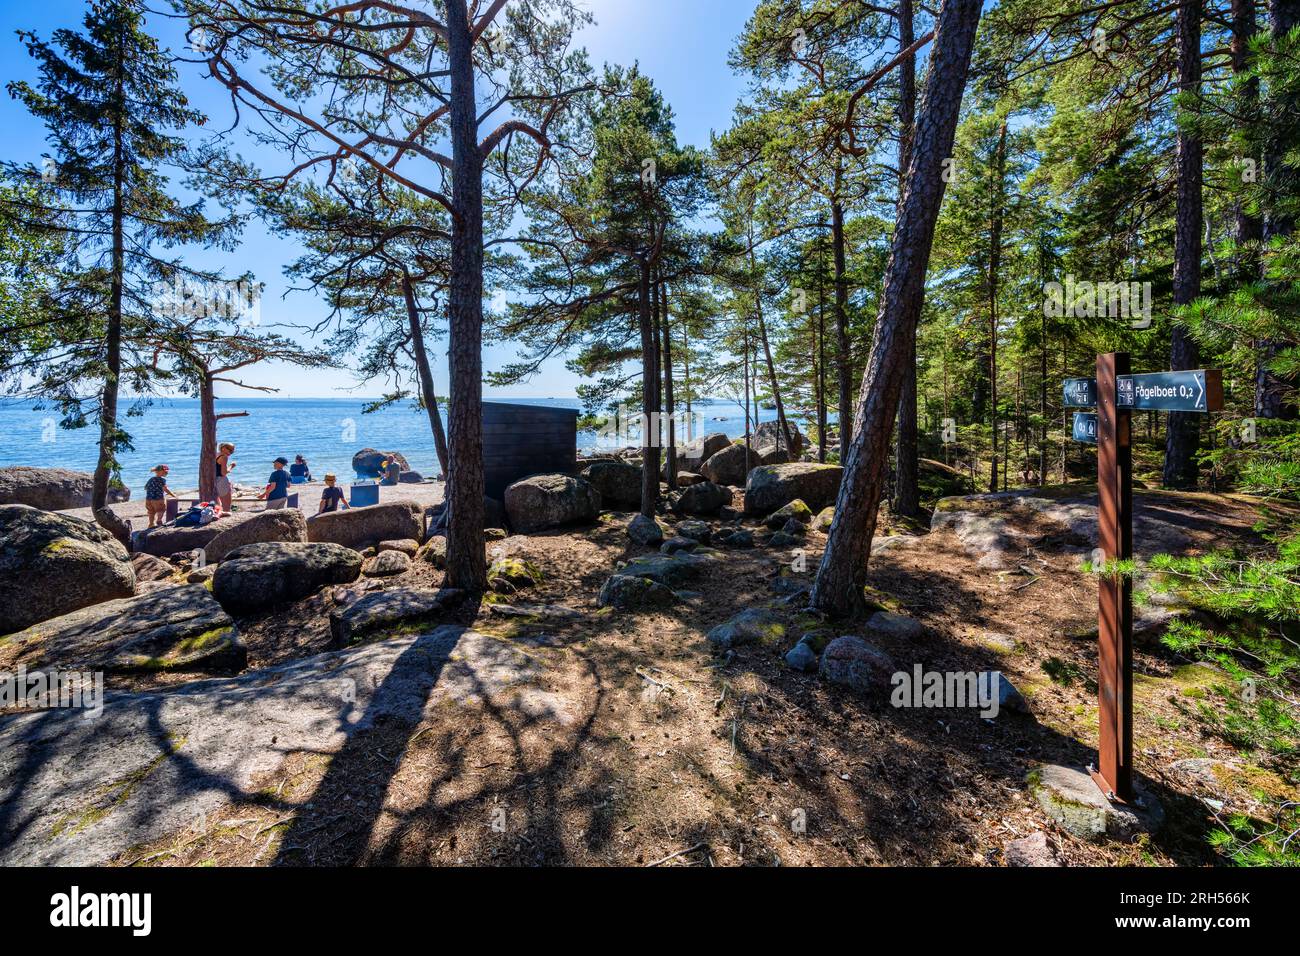 Una giornata di sole nell'area ricreativa di Varlaxudden a Porvoo, Finlandia Foto Stock